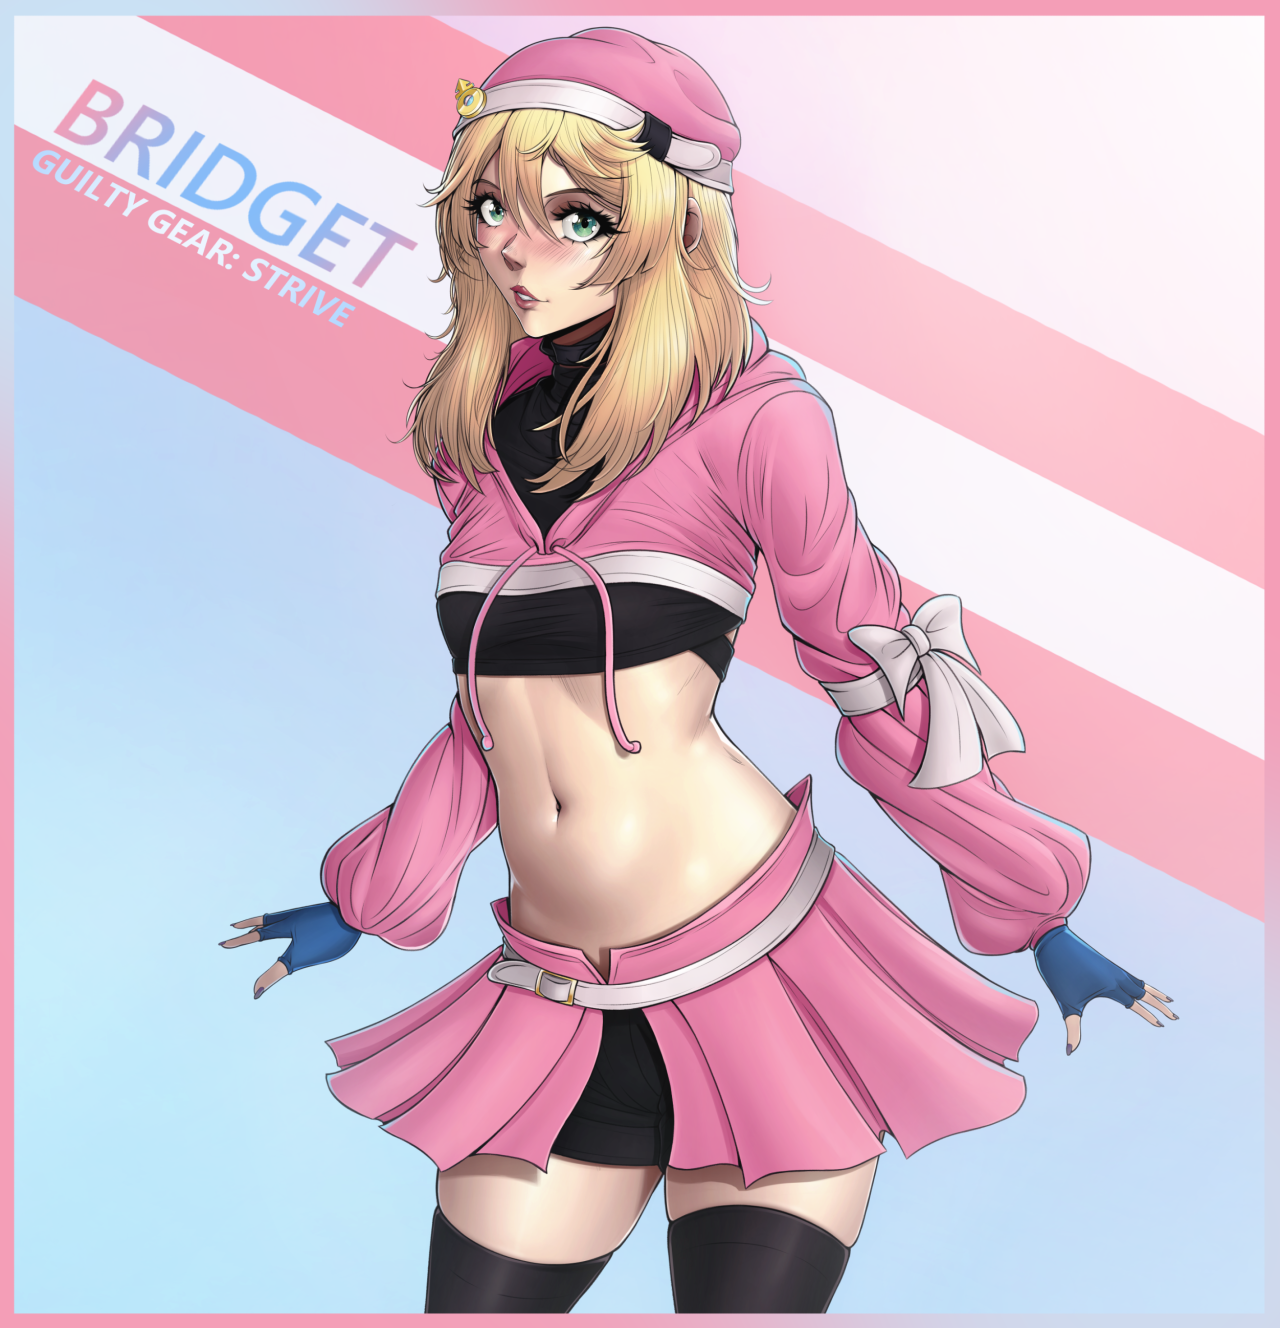 Chihiro as Bridget from Guilty Gear